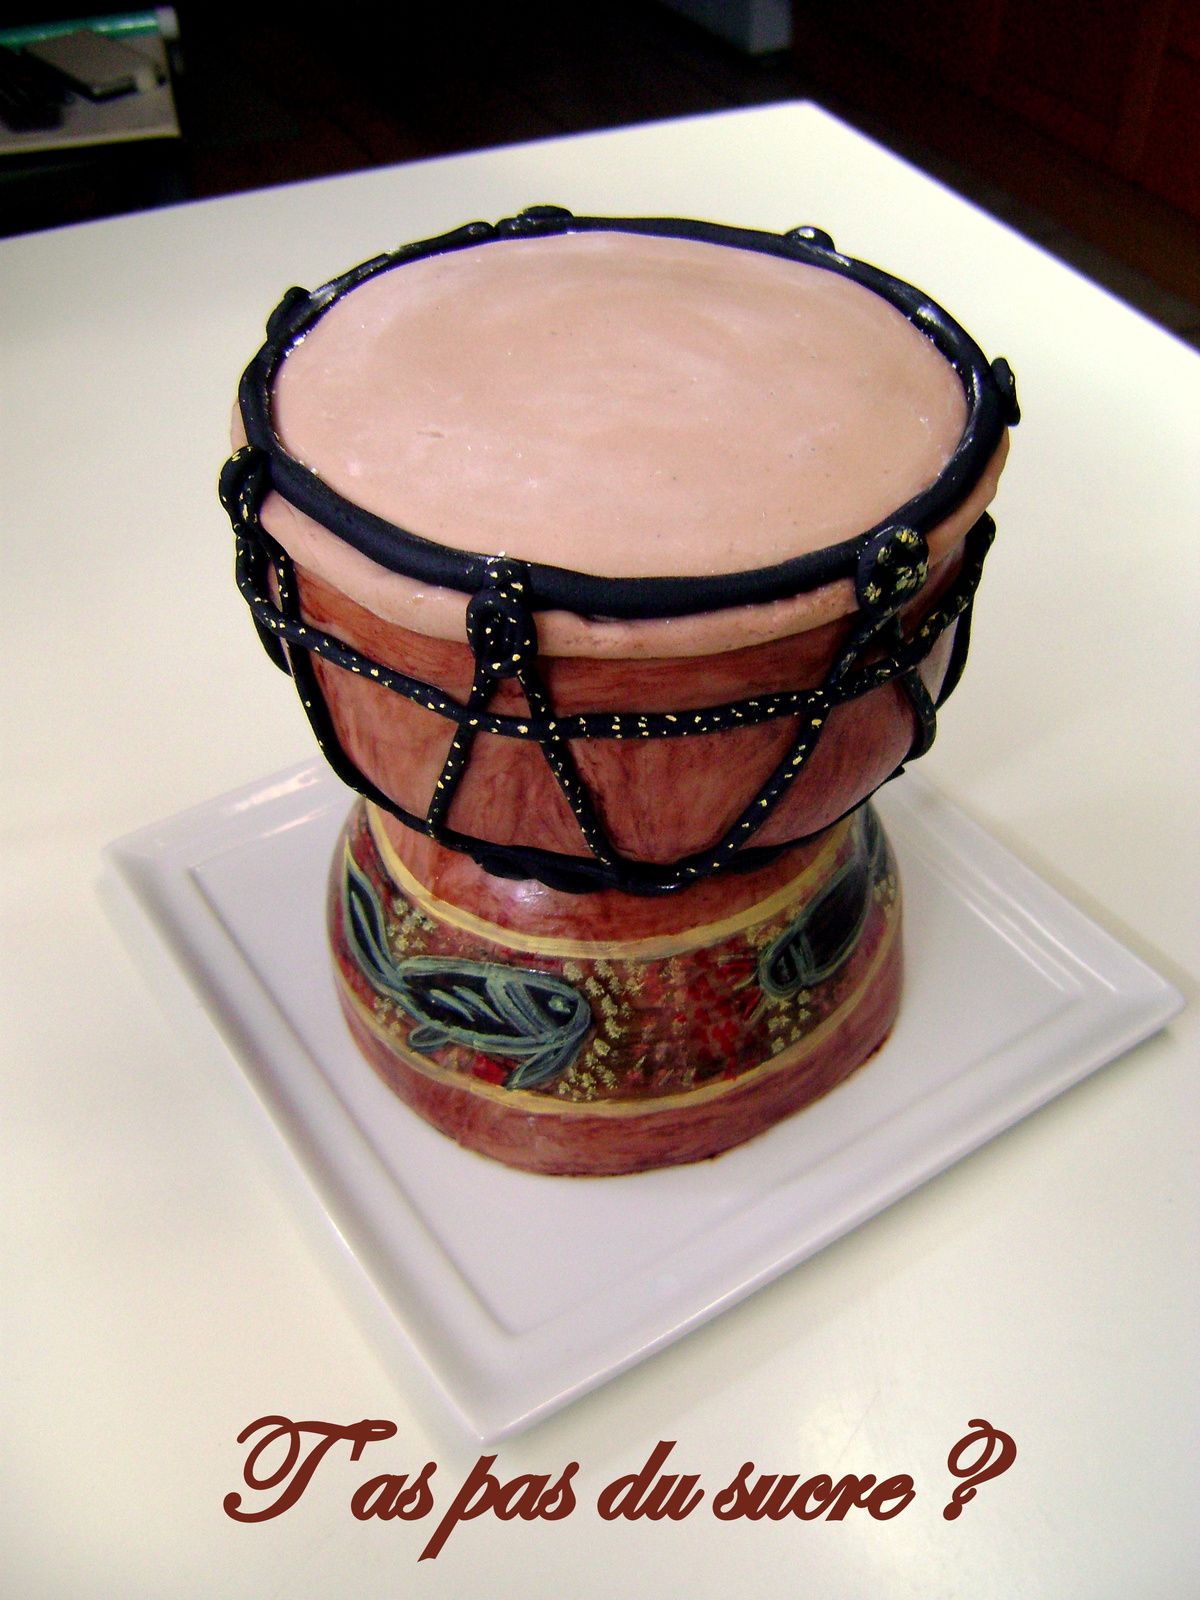 Gâteau Tam-tam (djembé) - taspasdusucre.overblog.com